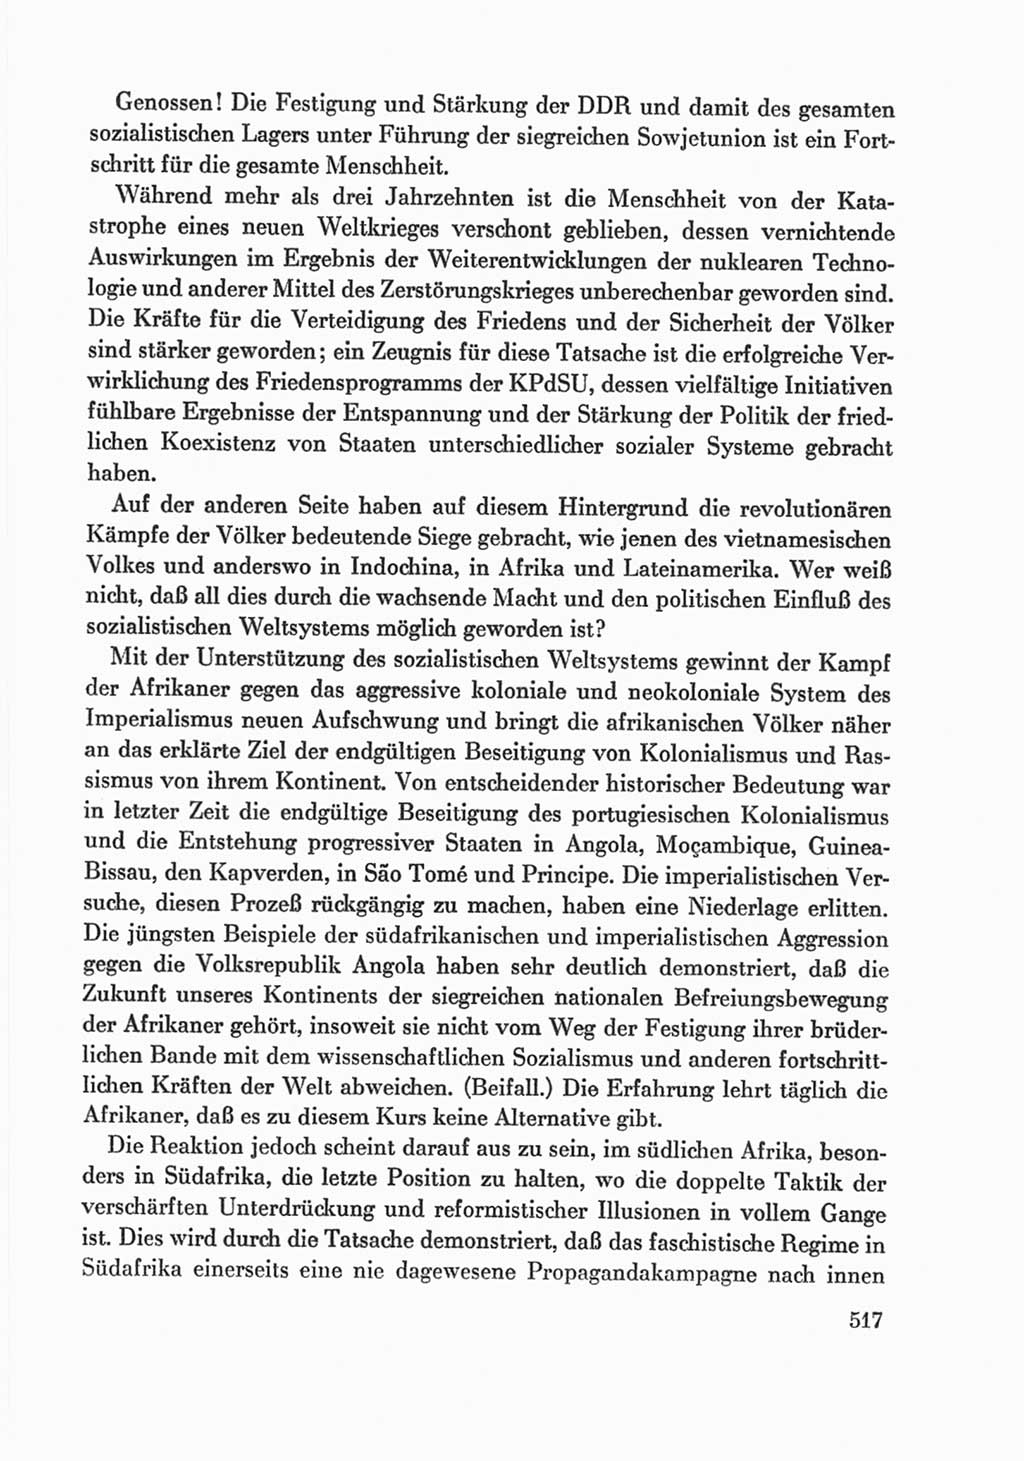 Protokoll der Verhandlungen des Ⅸ. Parteitages der Sozialistischen Einheitspartei Deutschlands (SED) [Deutsche Demokratische Republik (DDR)] 1976, Band 1, Seite 517 (Prot. Verh. Ⅸ. PT SED DDR 1976, Bd. 1, S. 517)